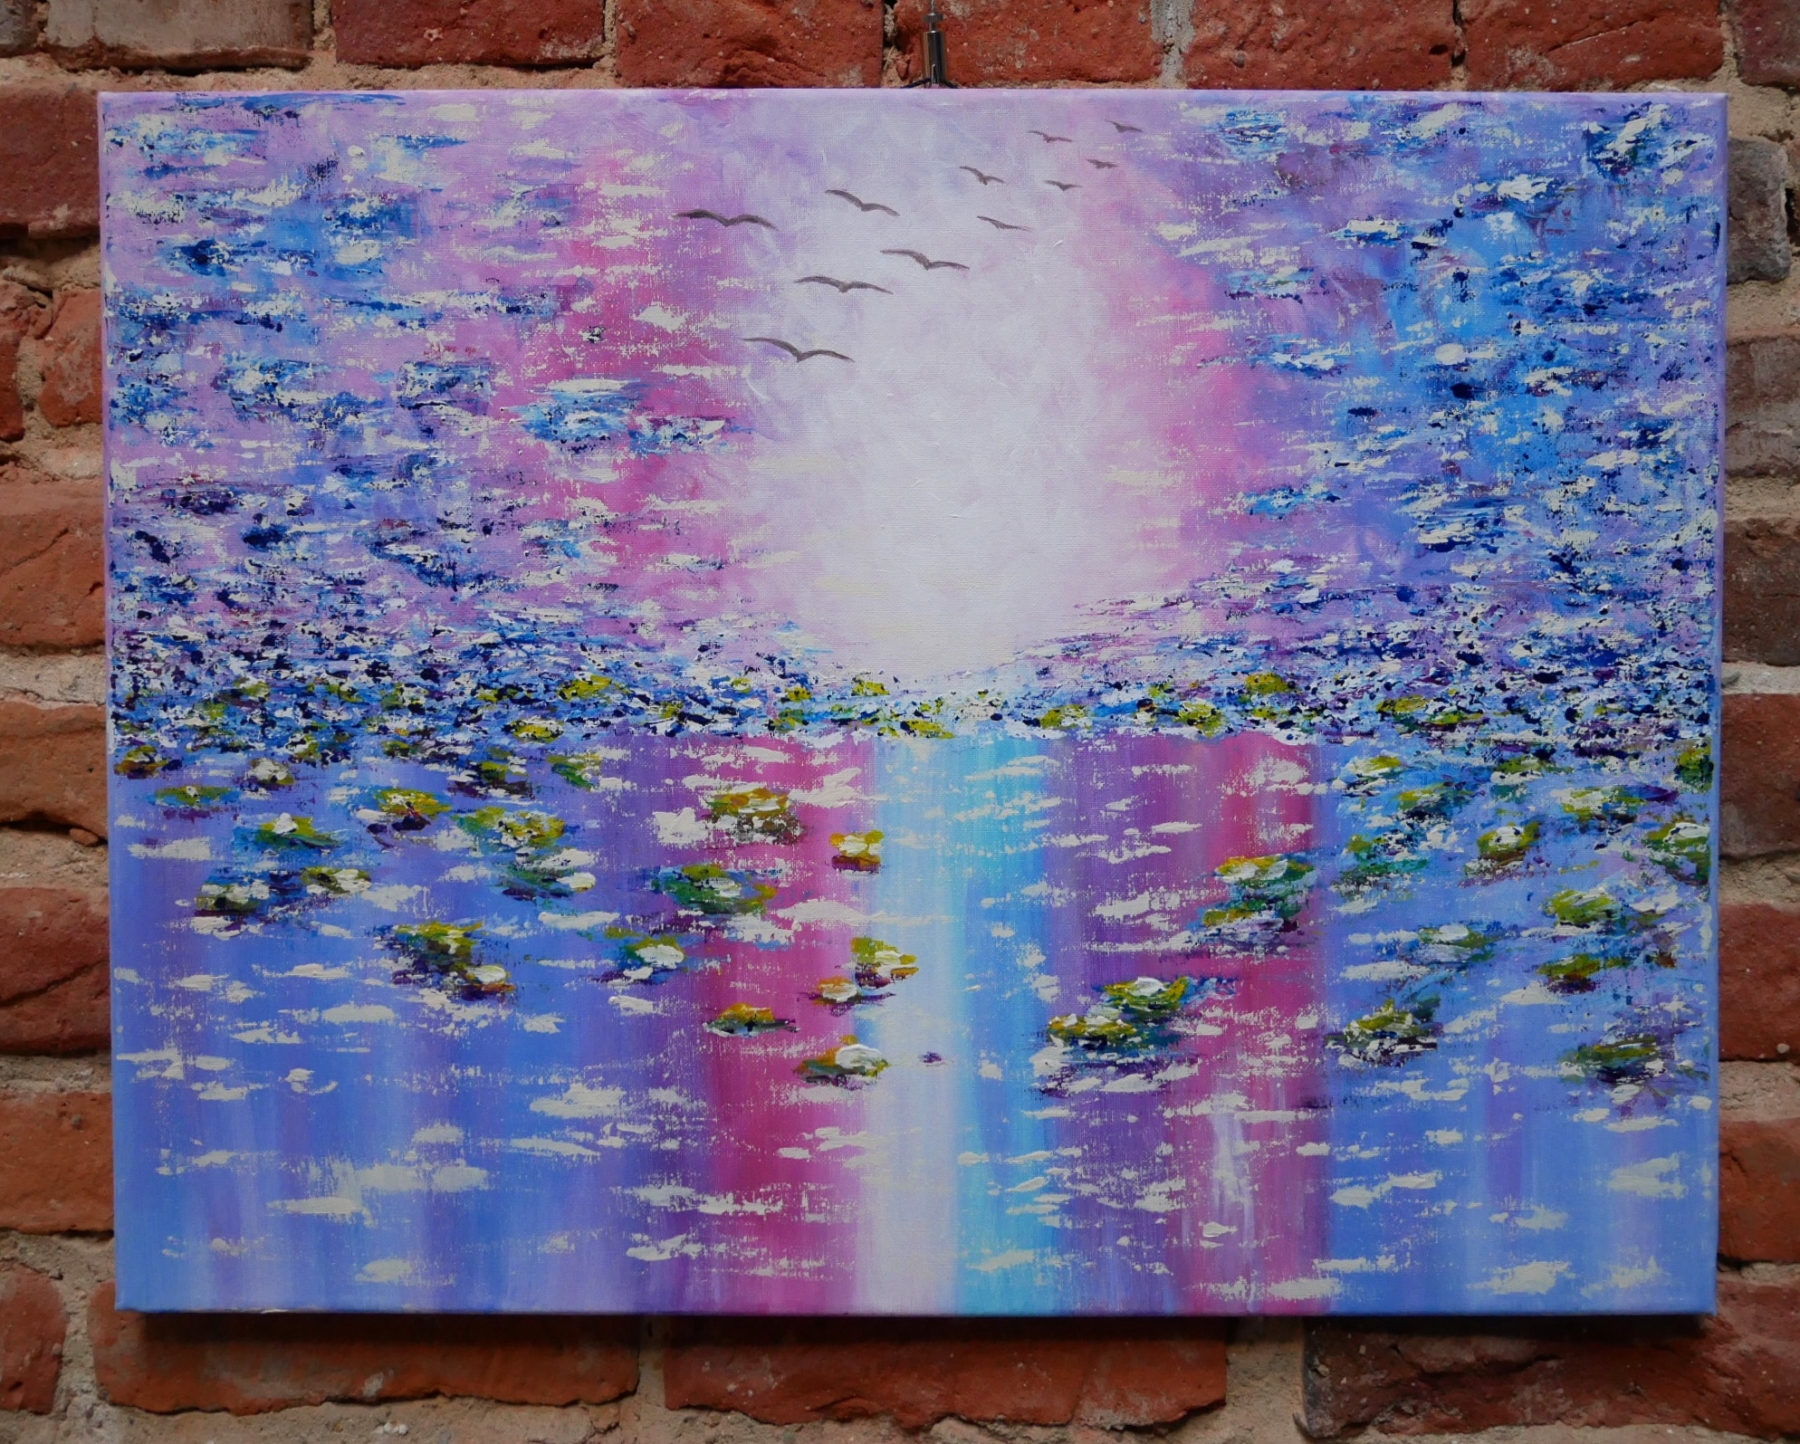 Obraz Oleny Radczenko przedstawiający kolorową wodę z nenufarami